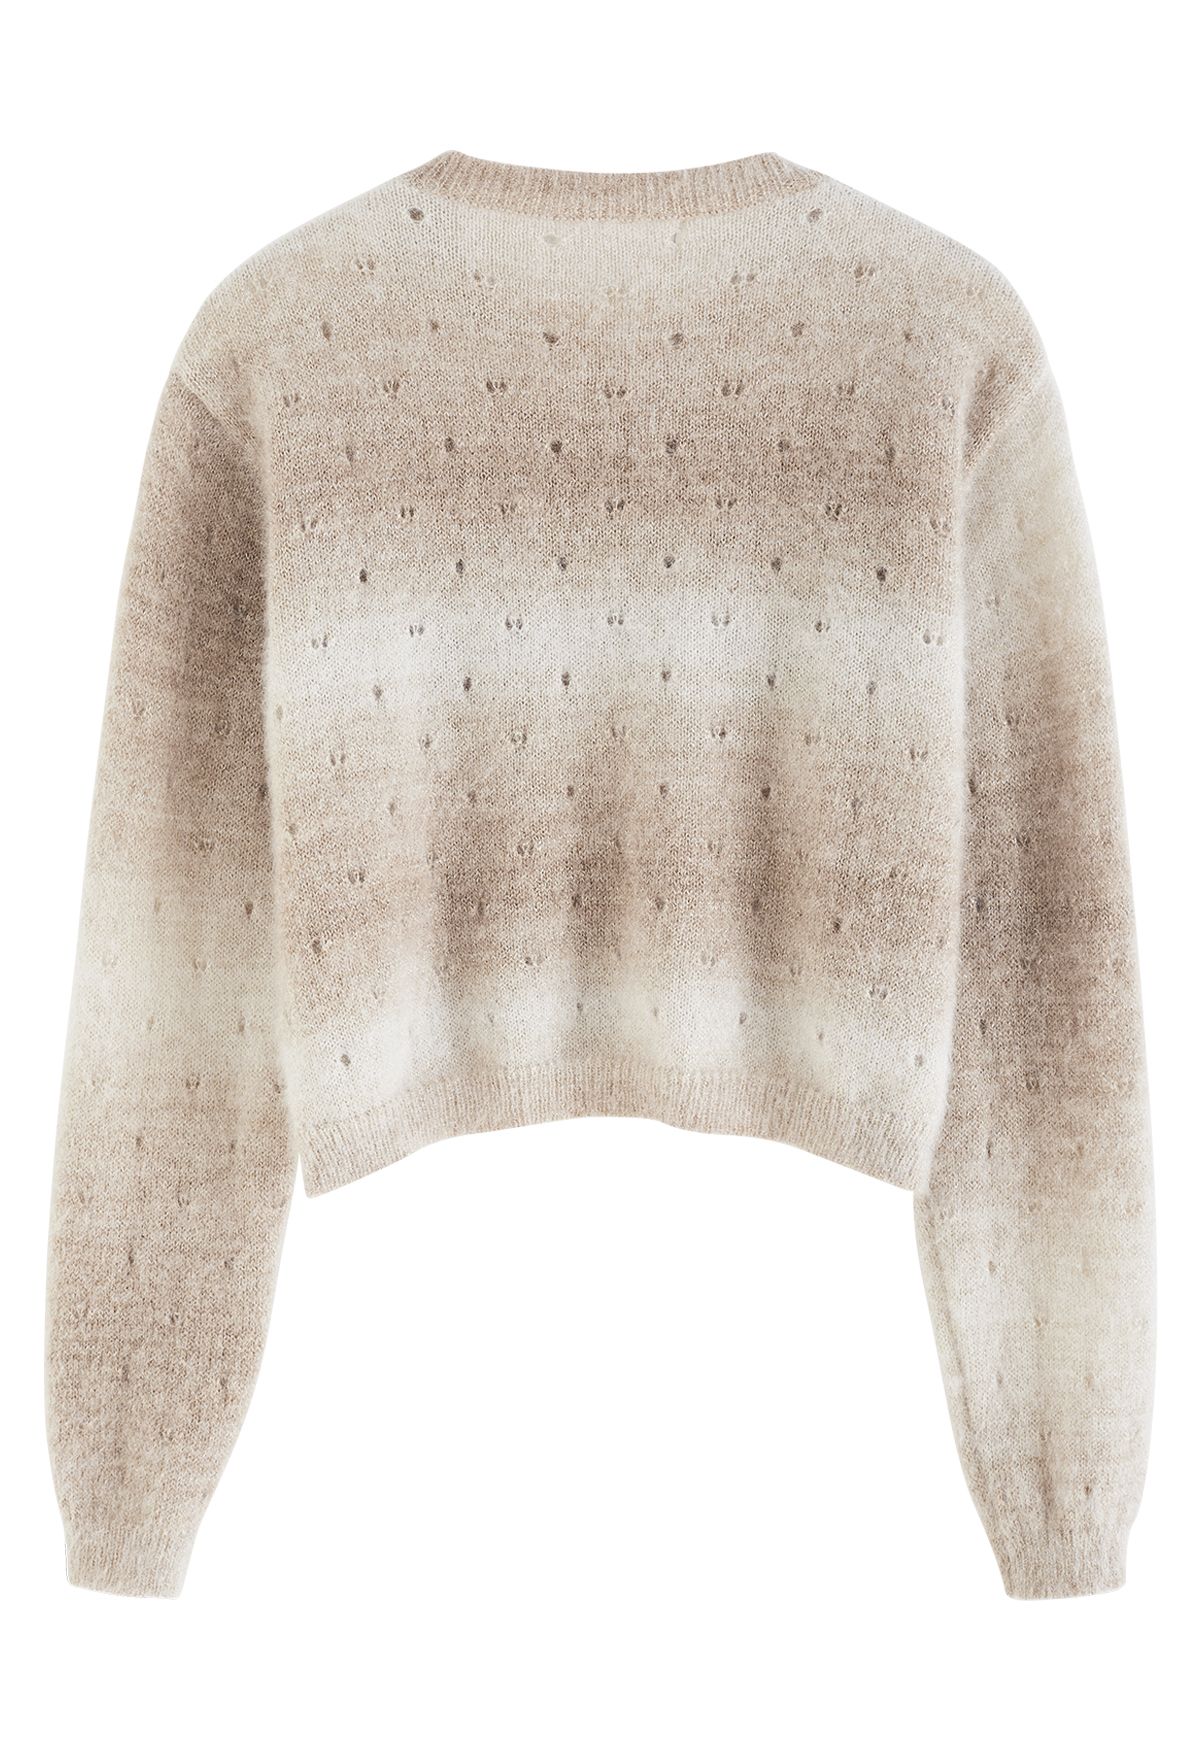 Suéter corto difuso con ojales Ombre en tostado claro